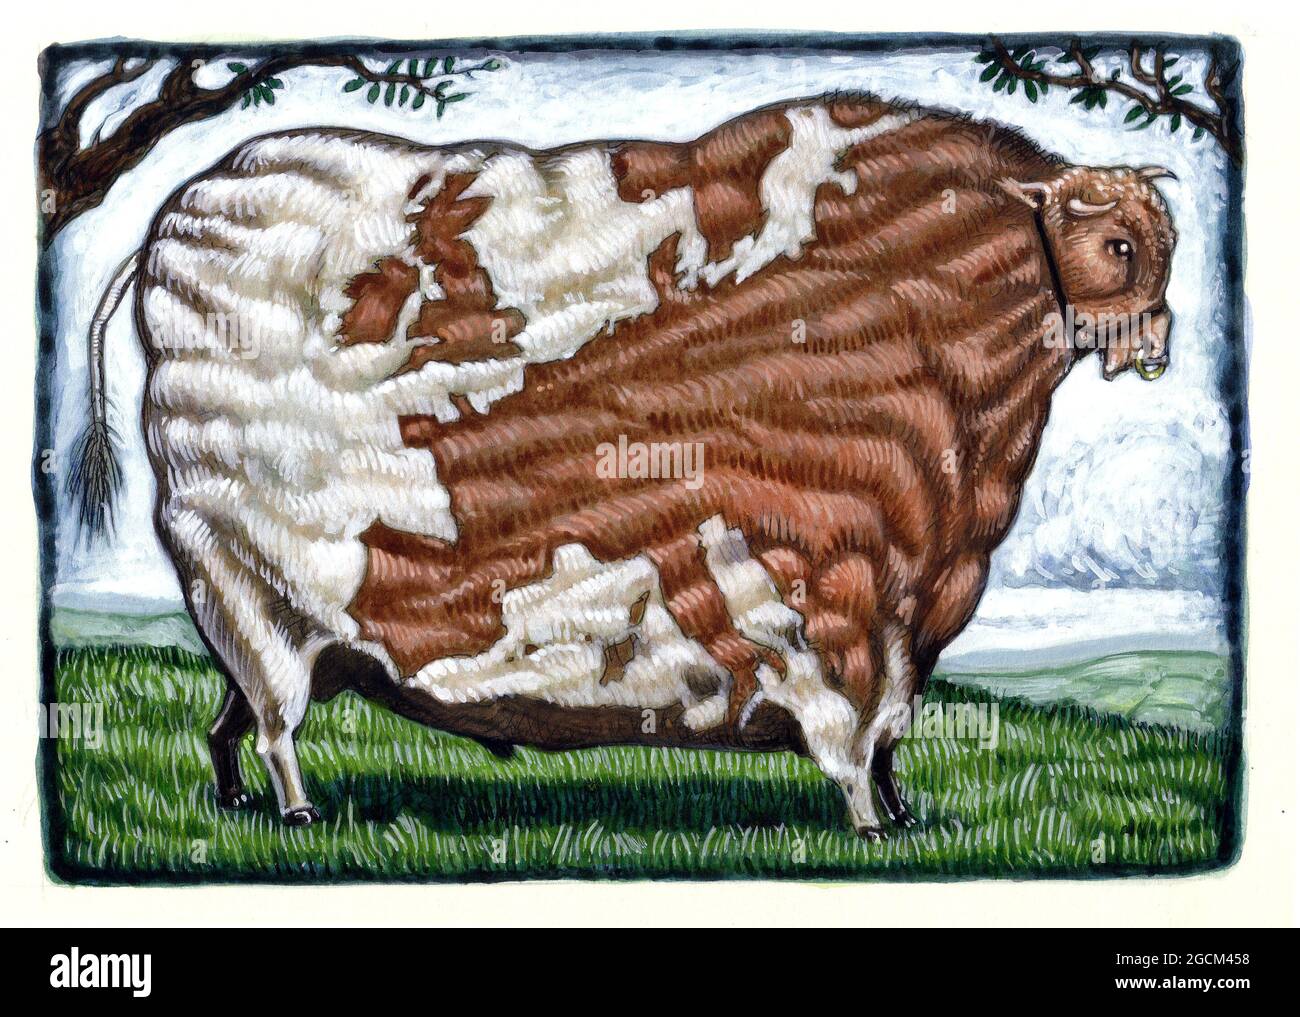 Illustration artistique montrant une vache musclée dans le style de peintures du XVIIIe siècle de bétail à prix. La carte européenne en bloc reflète les marchés perdus à cause du Brexit. Banque D'Images